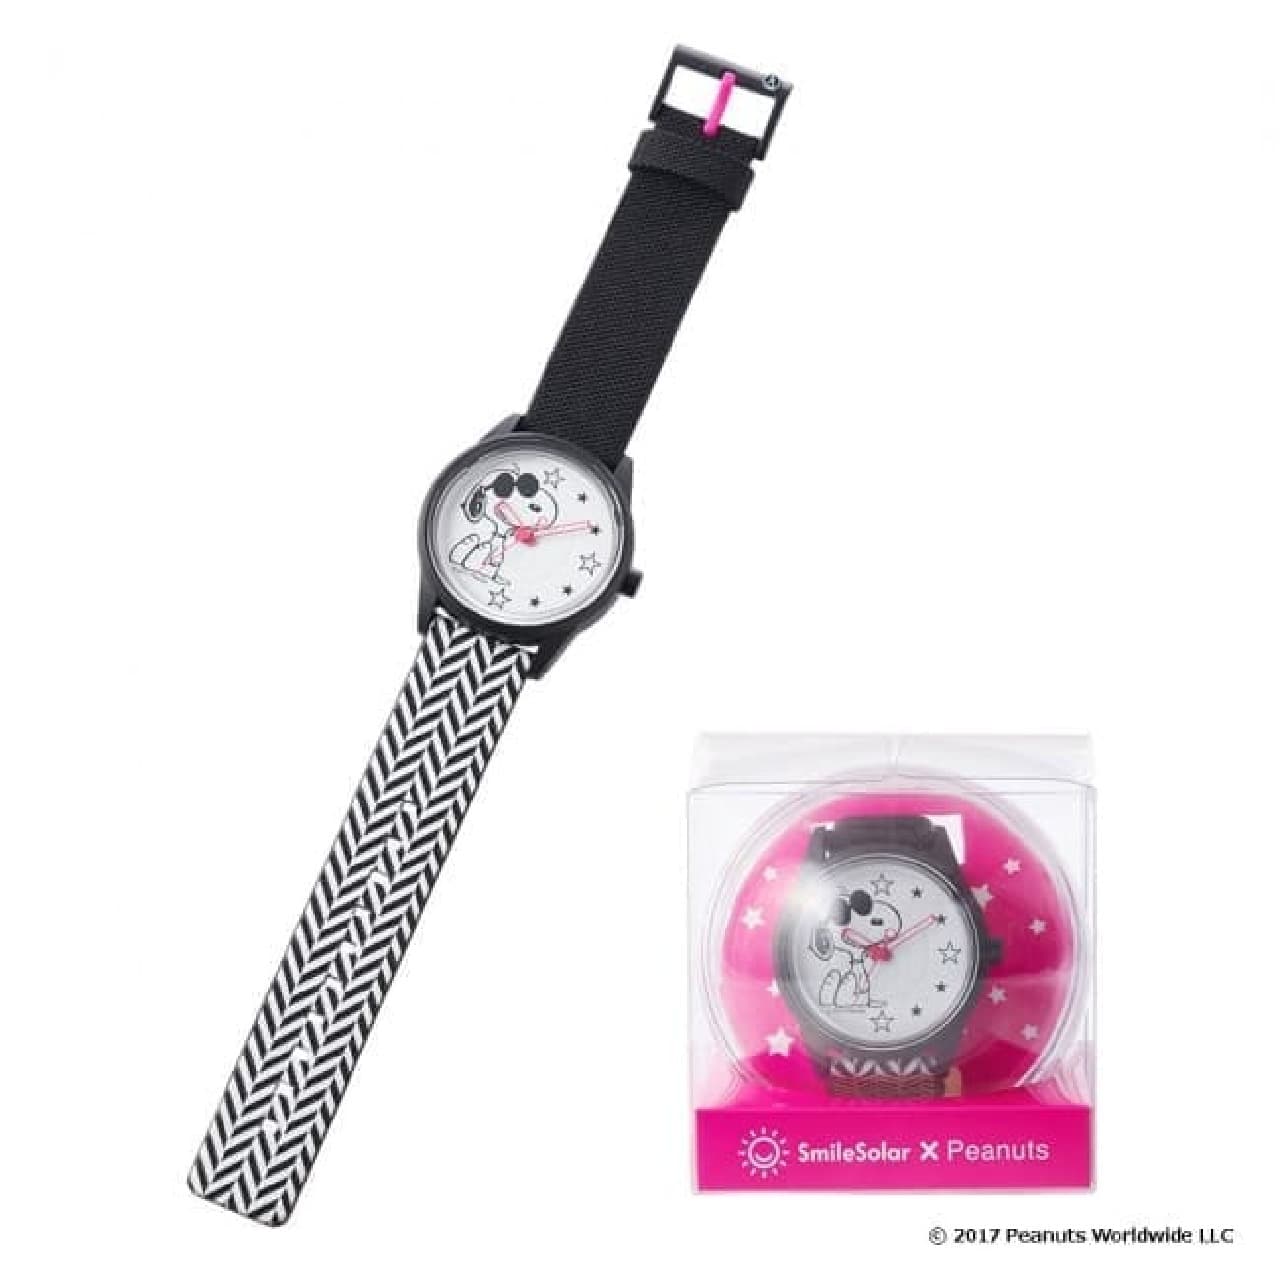 スヌーピーとソーラー腕時計「スマイルソーラー」のコラボアイテム